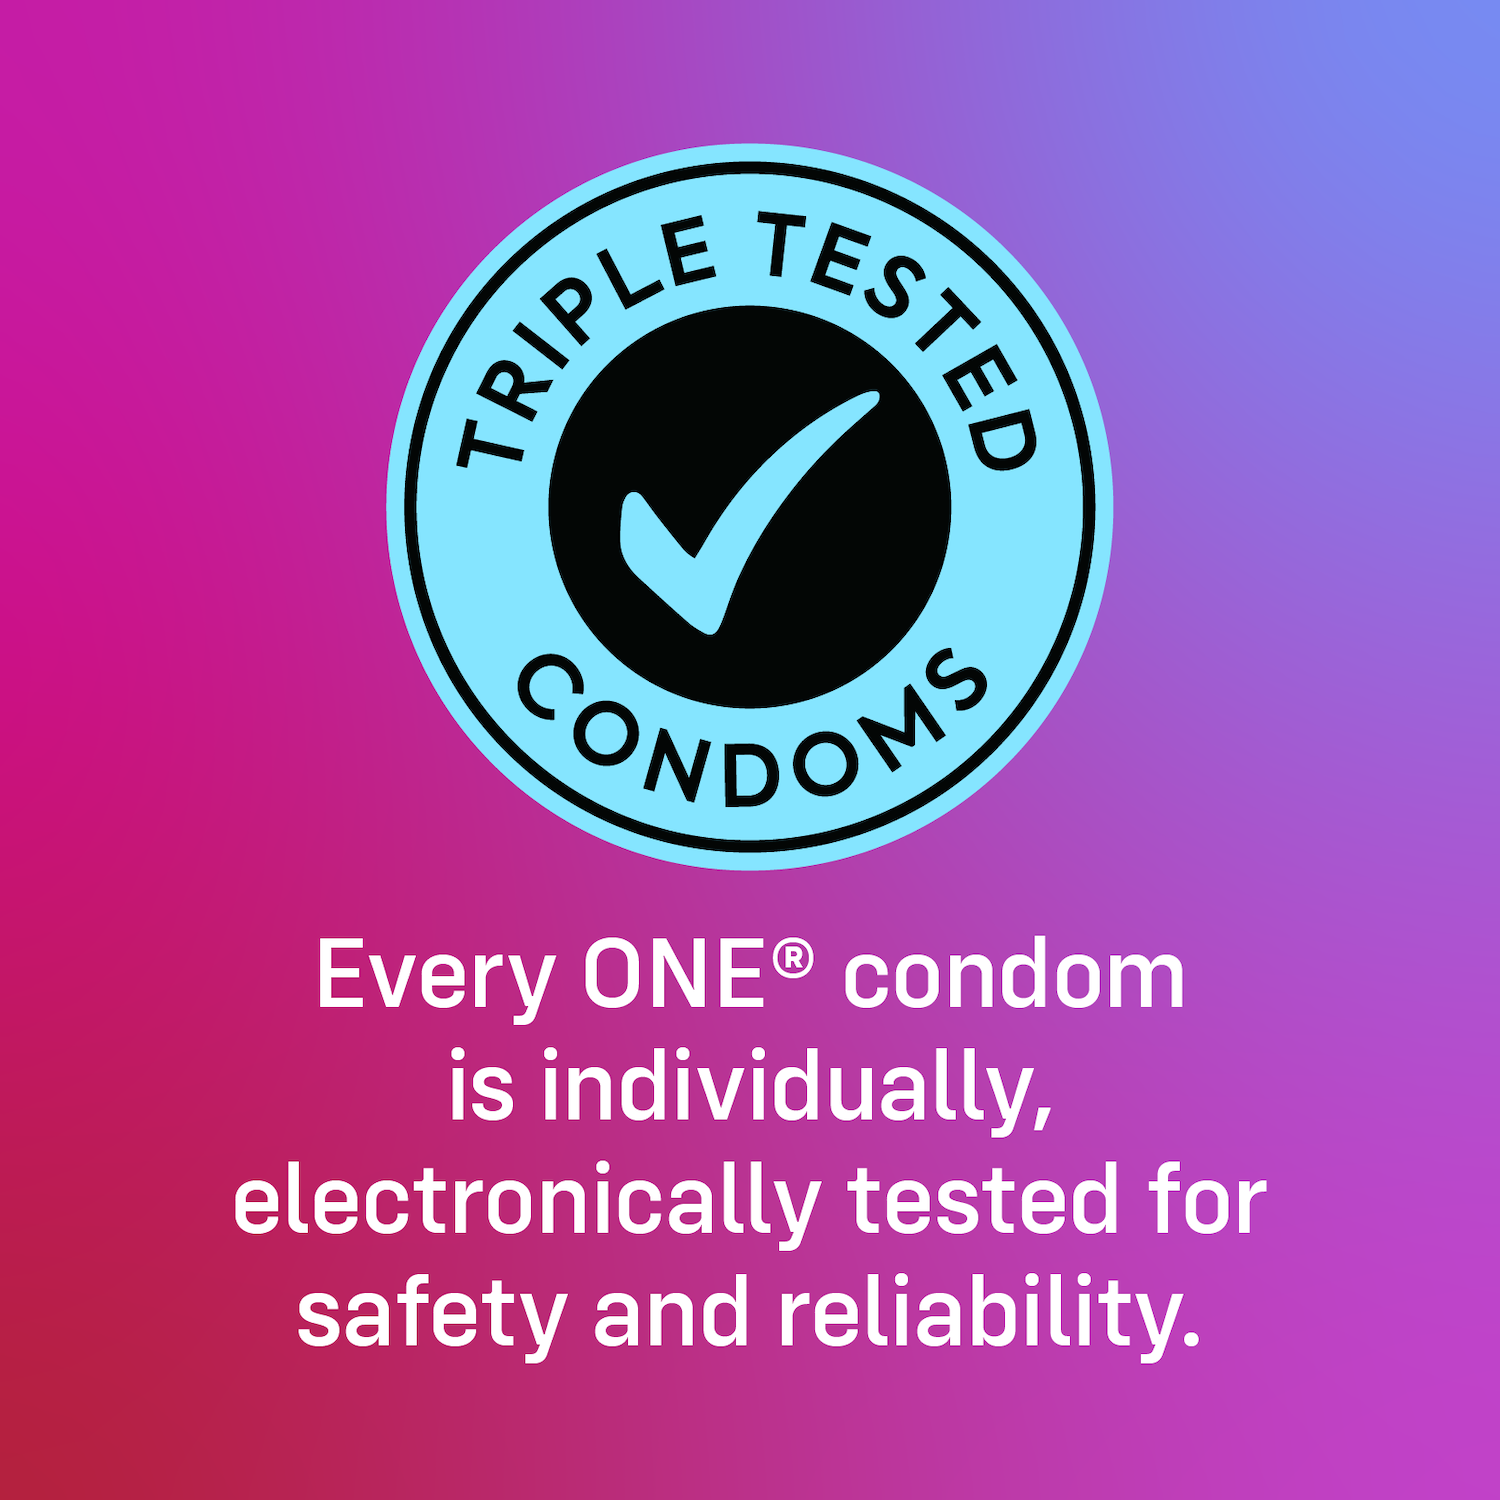 ONE «Tattoo Touch» 12 gemusterte Kondome mit Tattoo-Design auf dem Kondom - vegan & ohne schädlichen Inhaltsstoffe